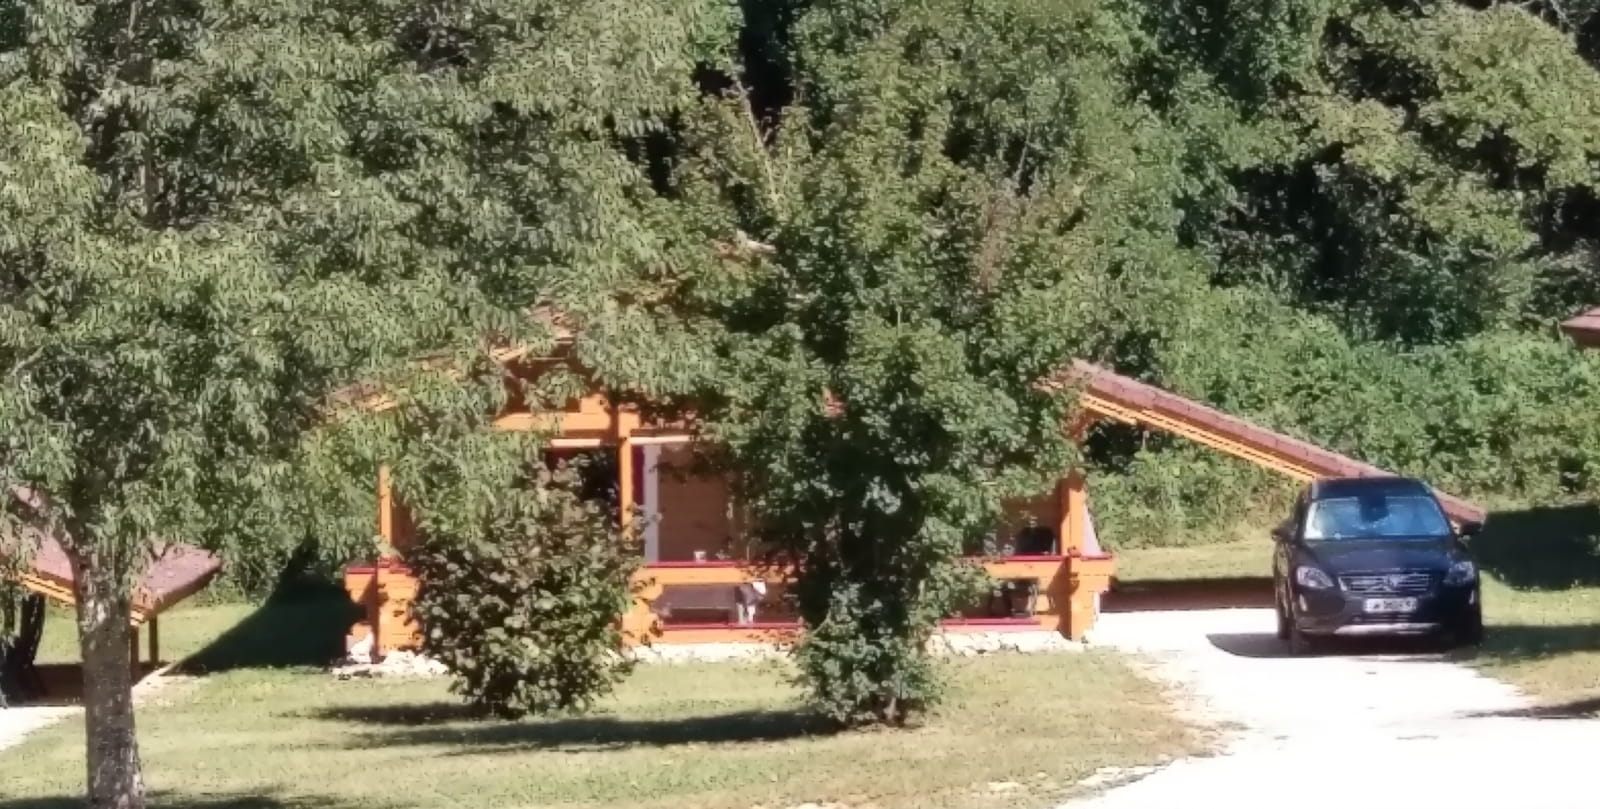 Le chalet avec son carport et son jardin ouvert